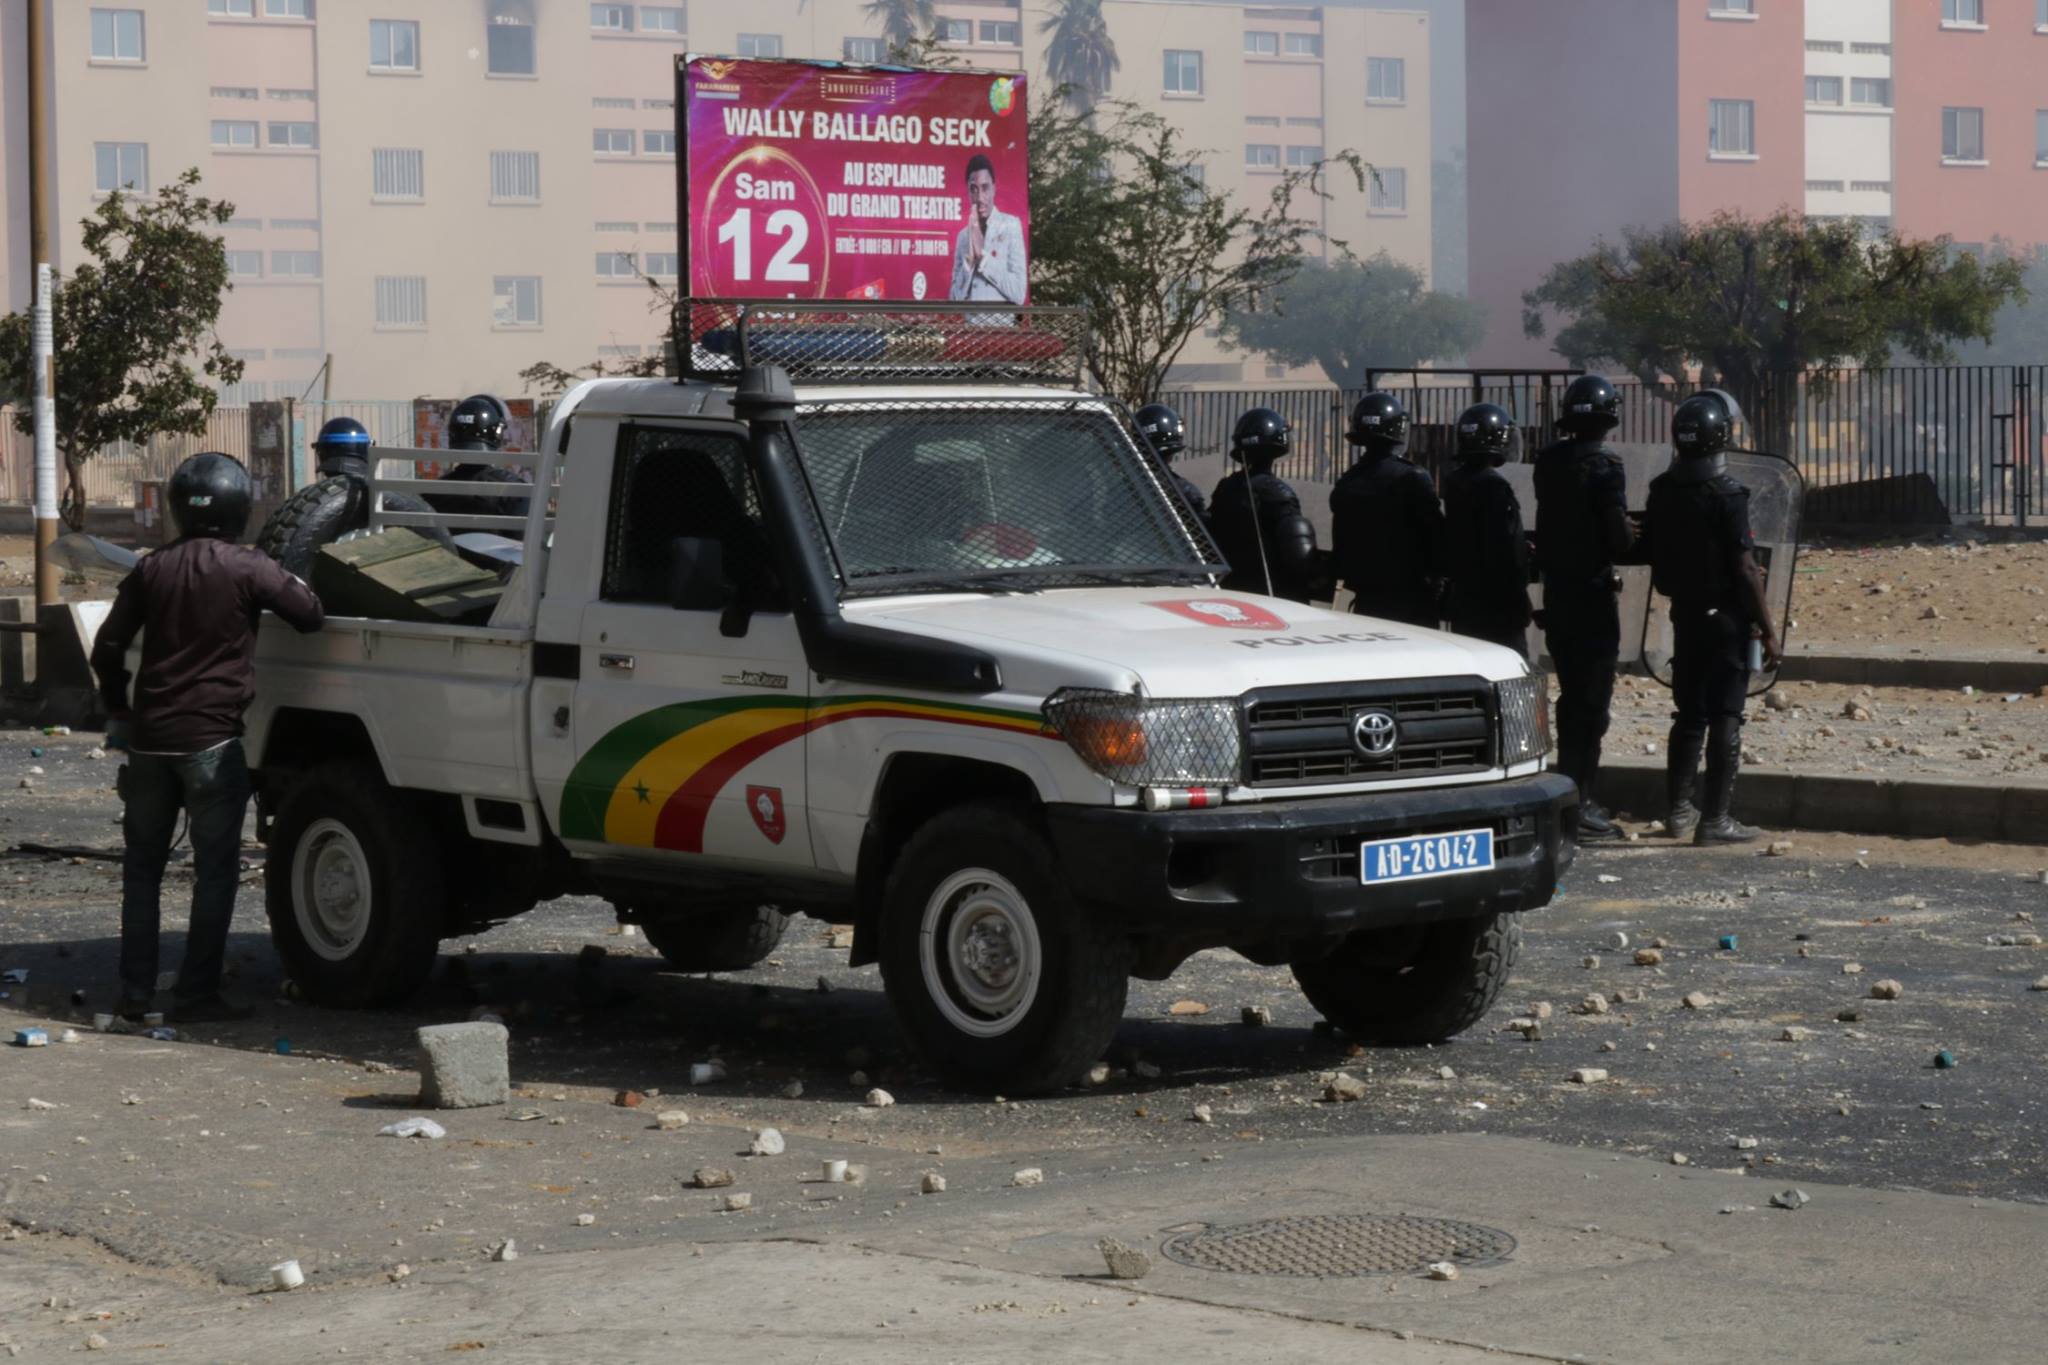 Affrontements entre policiers et étudiants sur l’avenue Cheikh Anta Diop de Dakar...Tout ce que vous n’avez pas vu en images